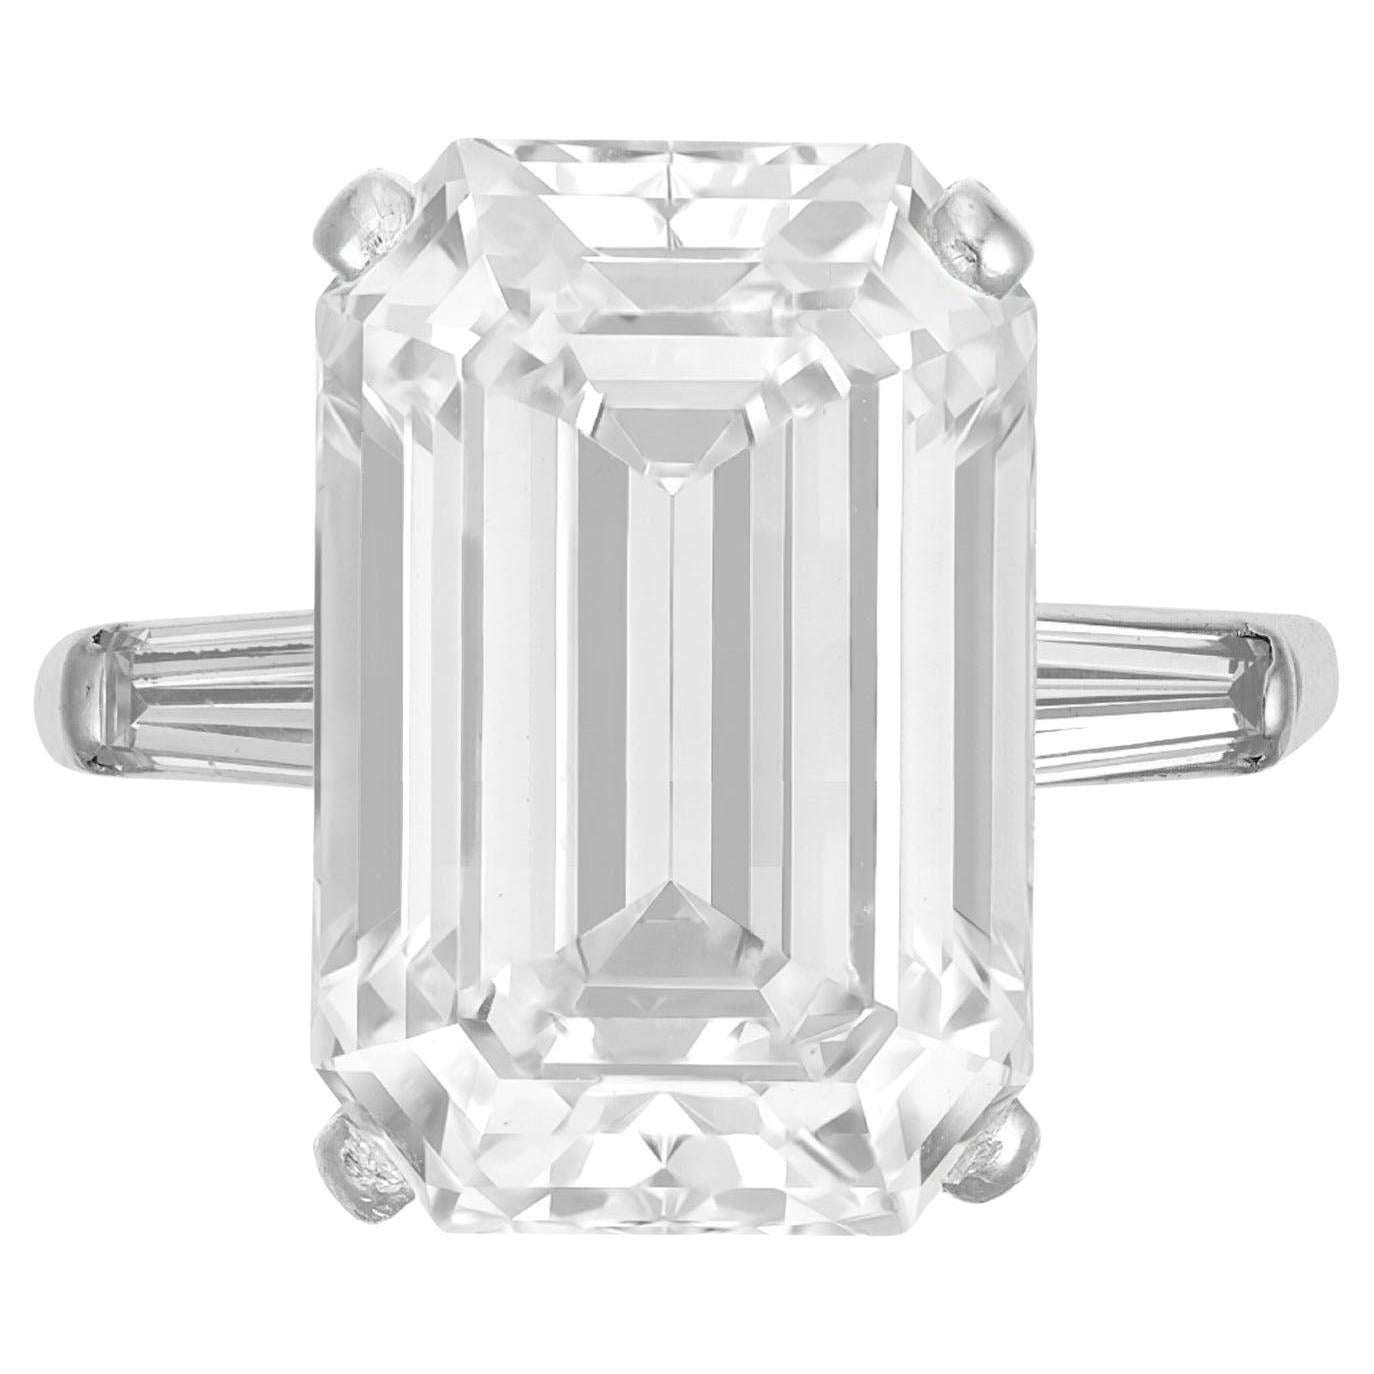 Bague en diamant certifié GIA 12 carats taille émeraude FLAWLESS D COLOR Type IIA